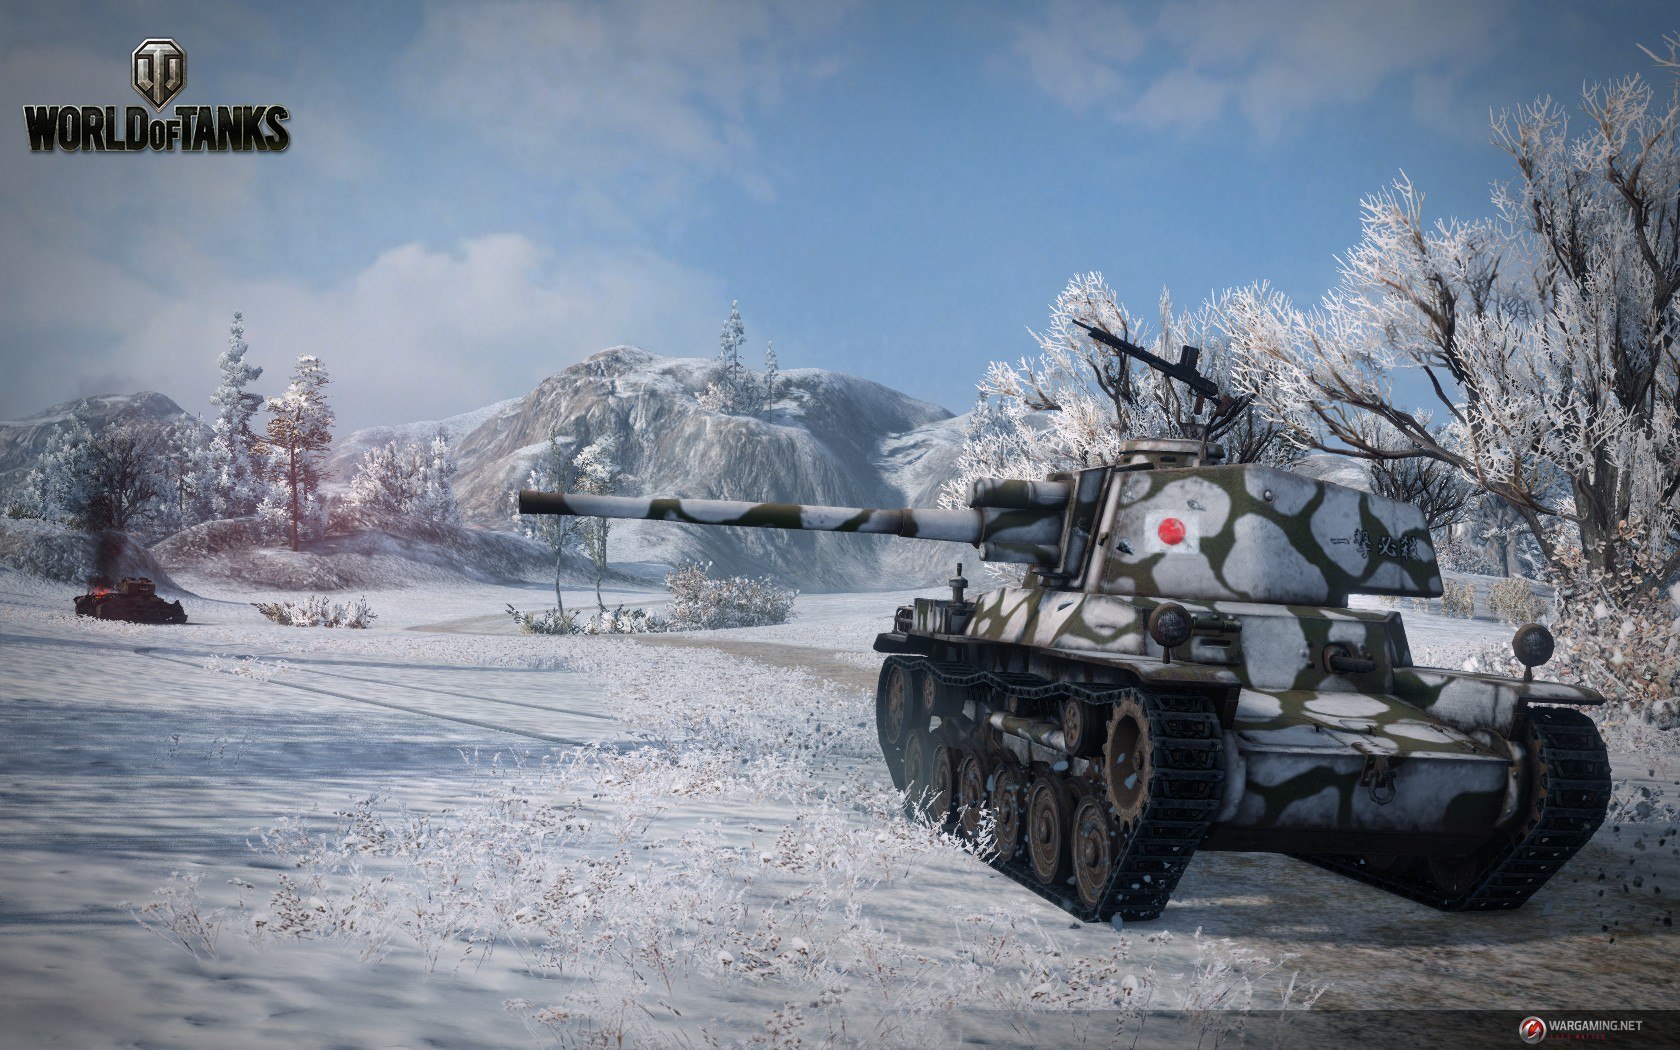 World of Tanks rimane uno dei migliori giochi multiplayer di combattimento di carri armati disponibili fino ad oggi.